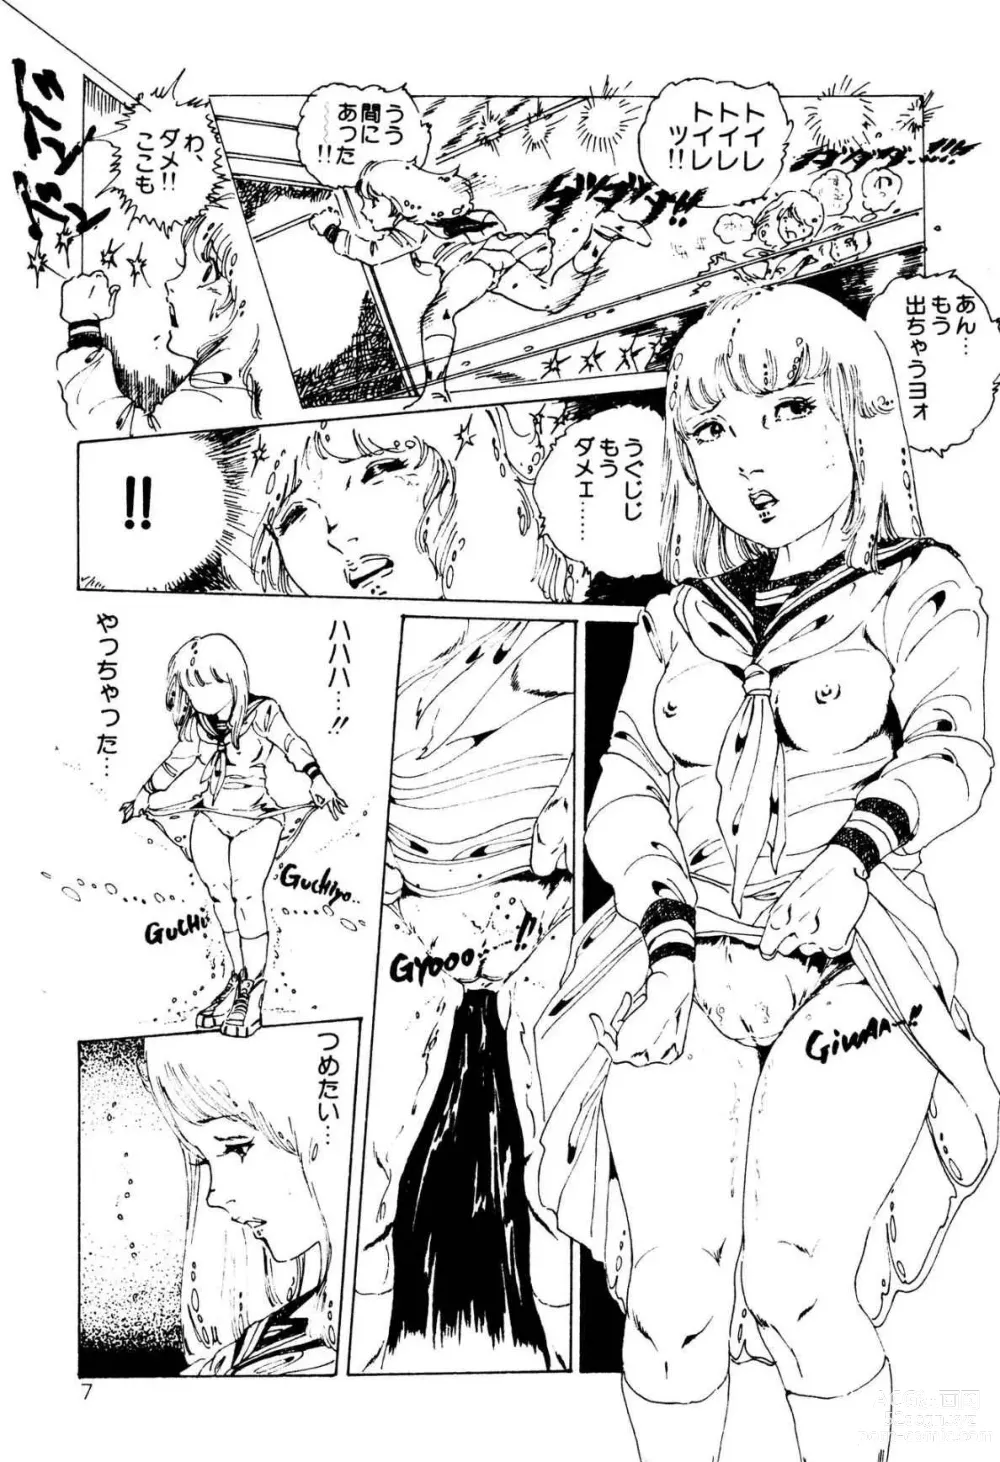 Page 7 of manga Kimamana Yousei